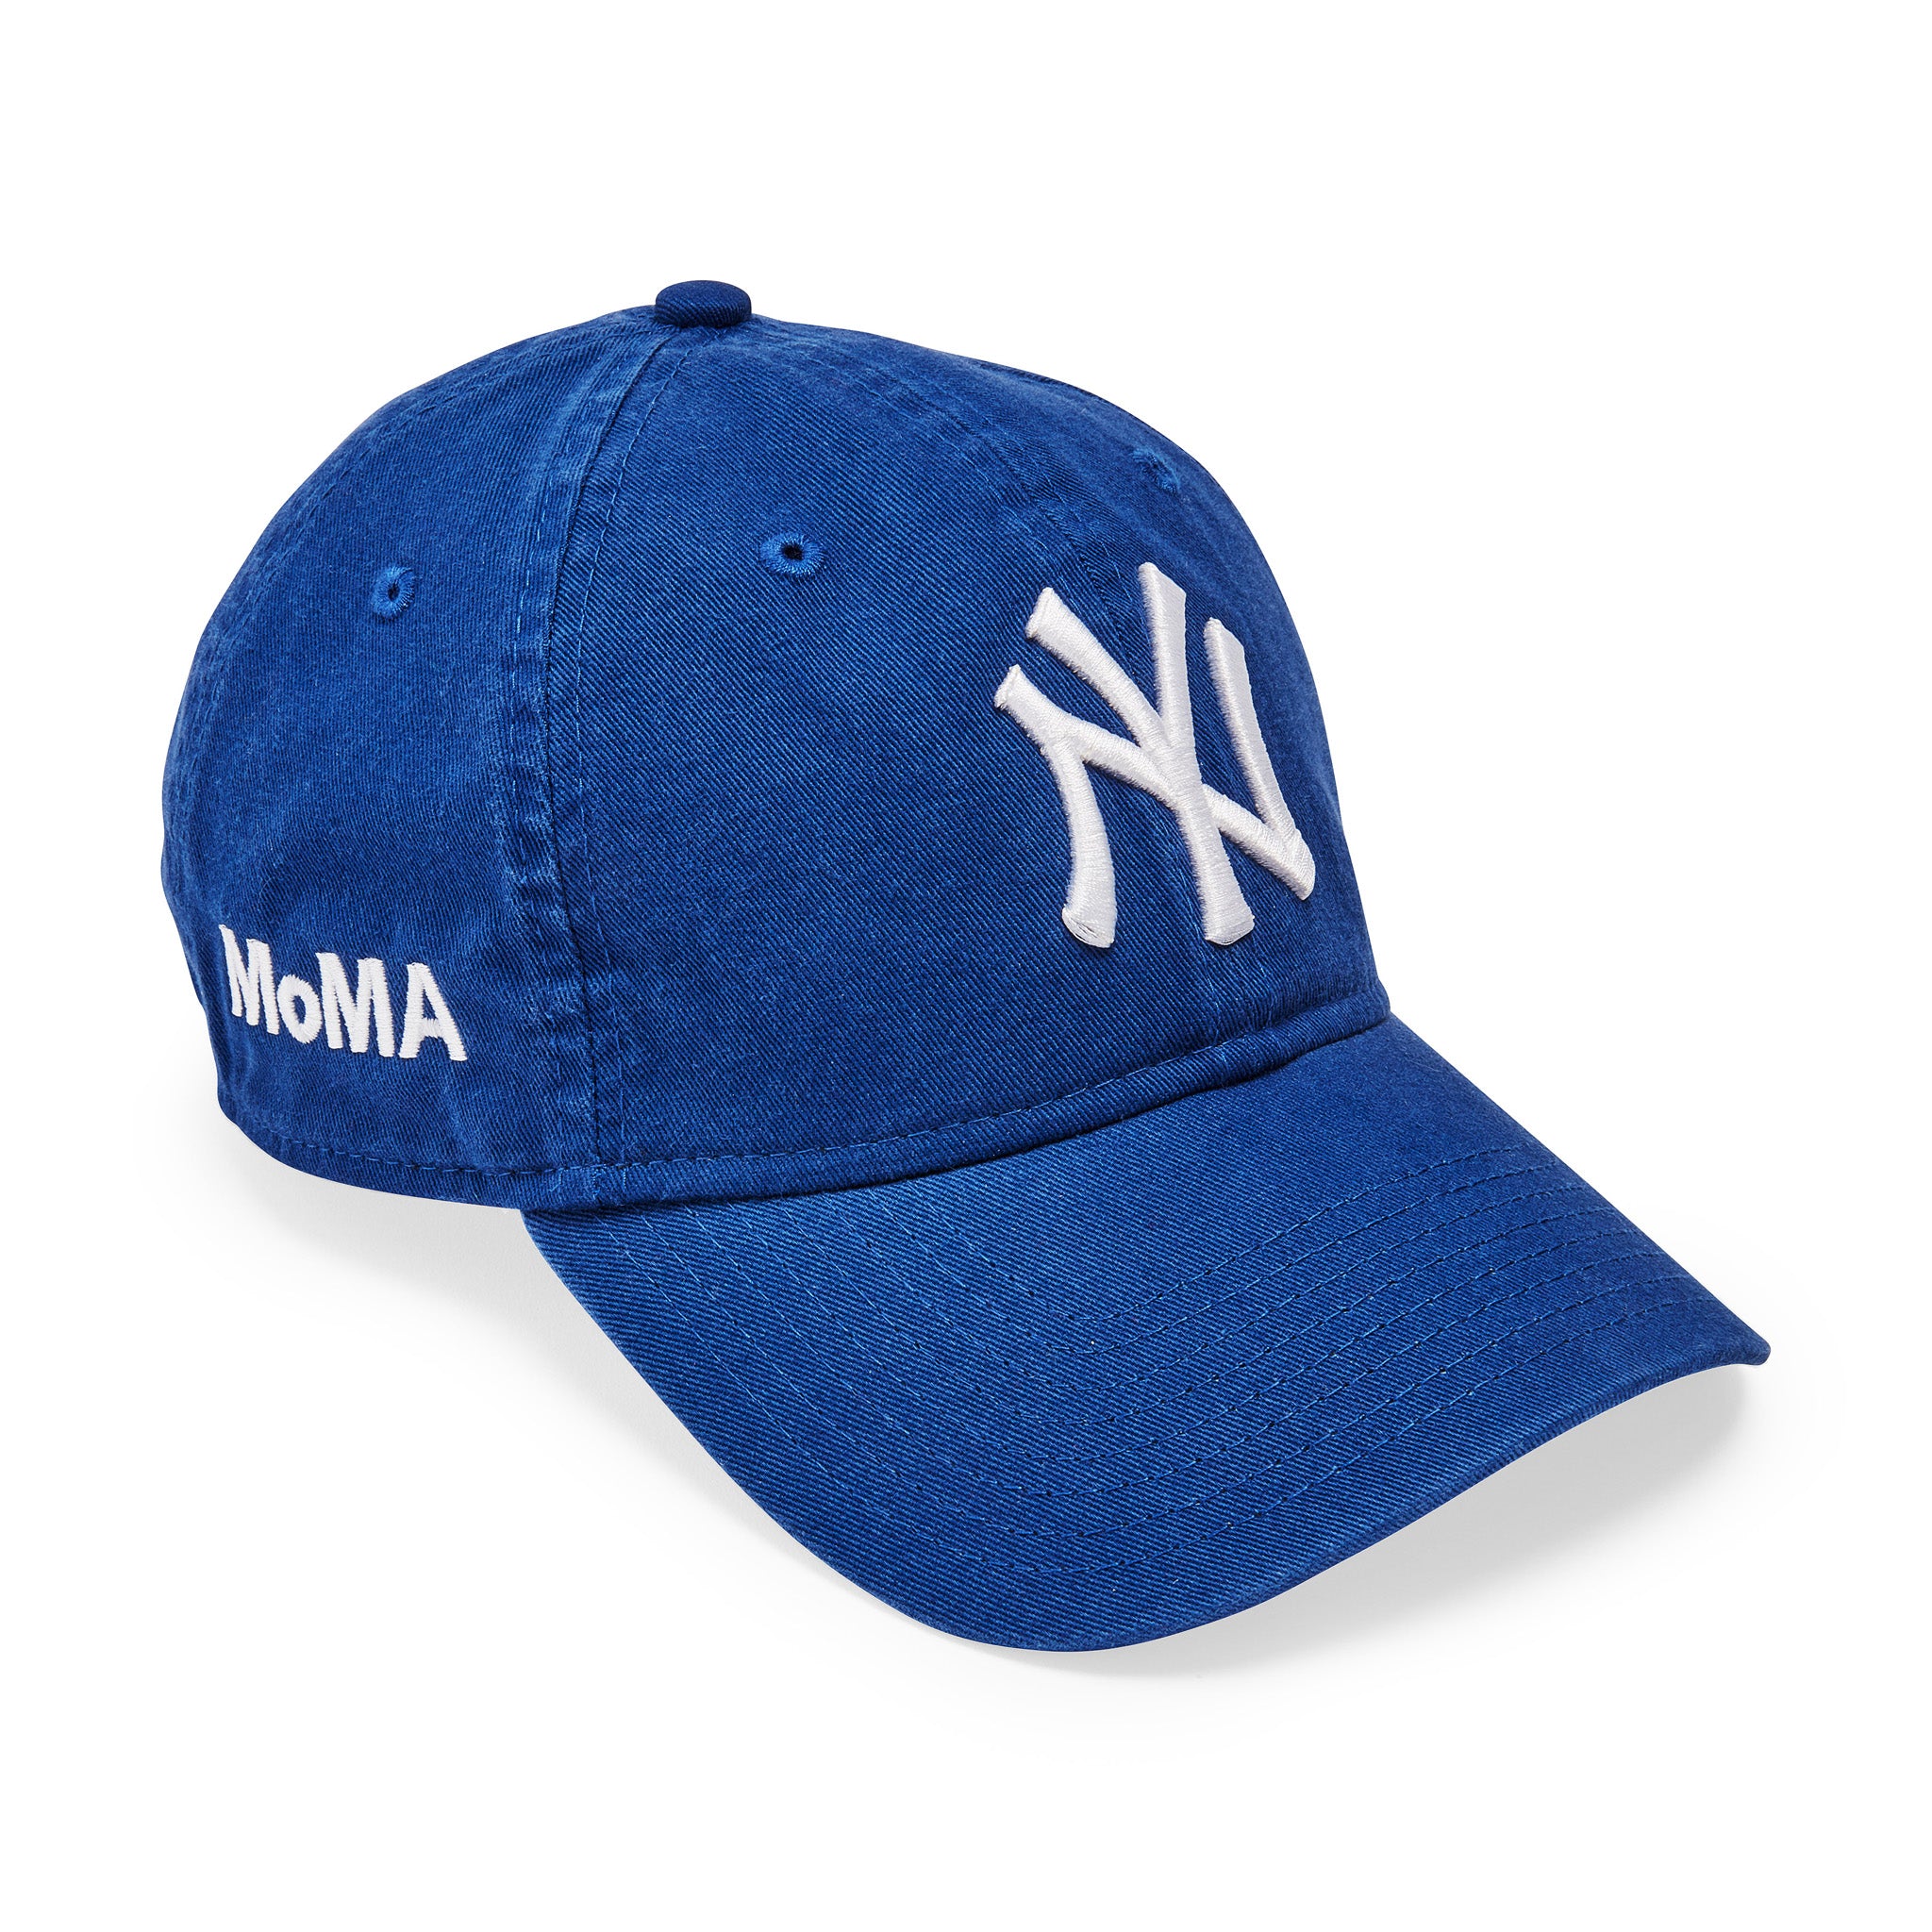 Moma NY Yankees Adjustable Baseball Cap - Bright Royal by New Era | One Size | Bright Royal